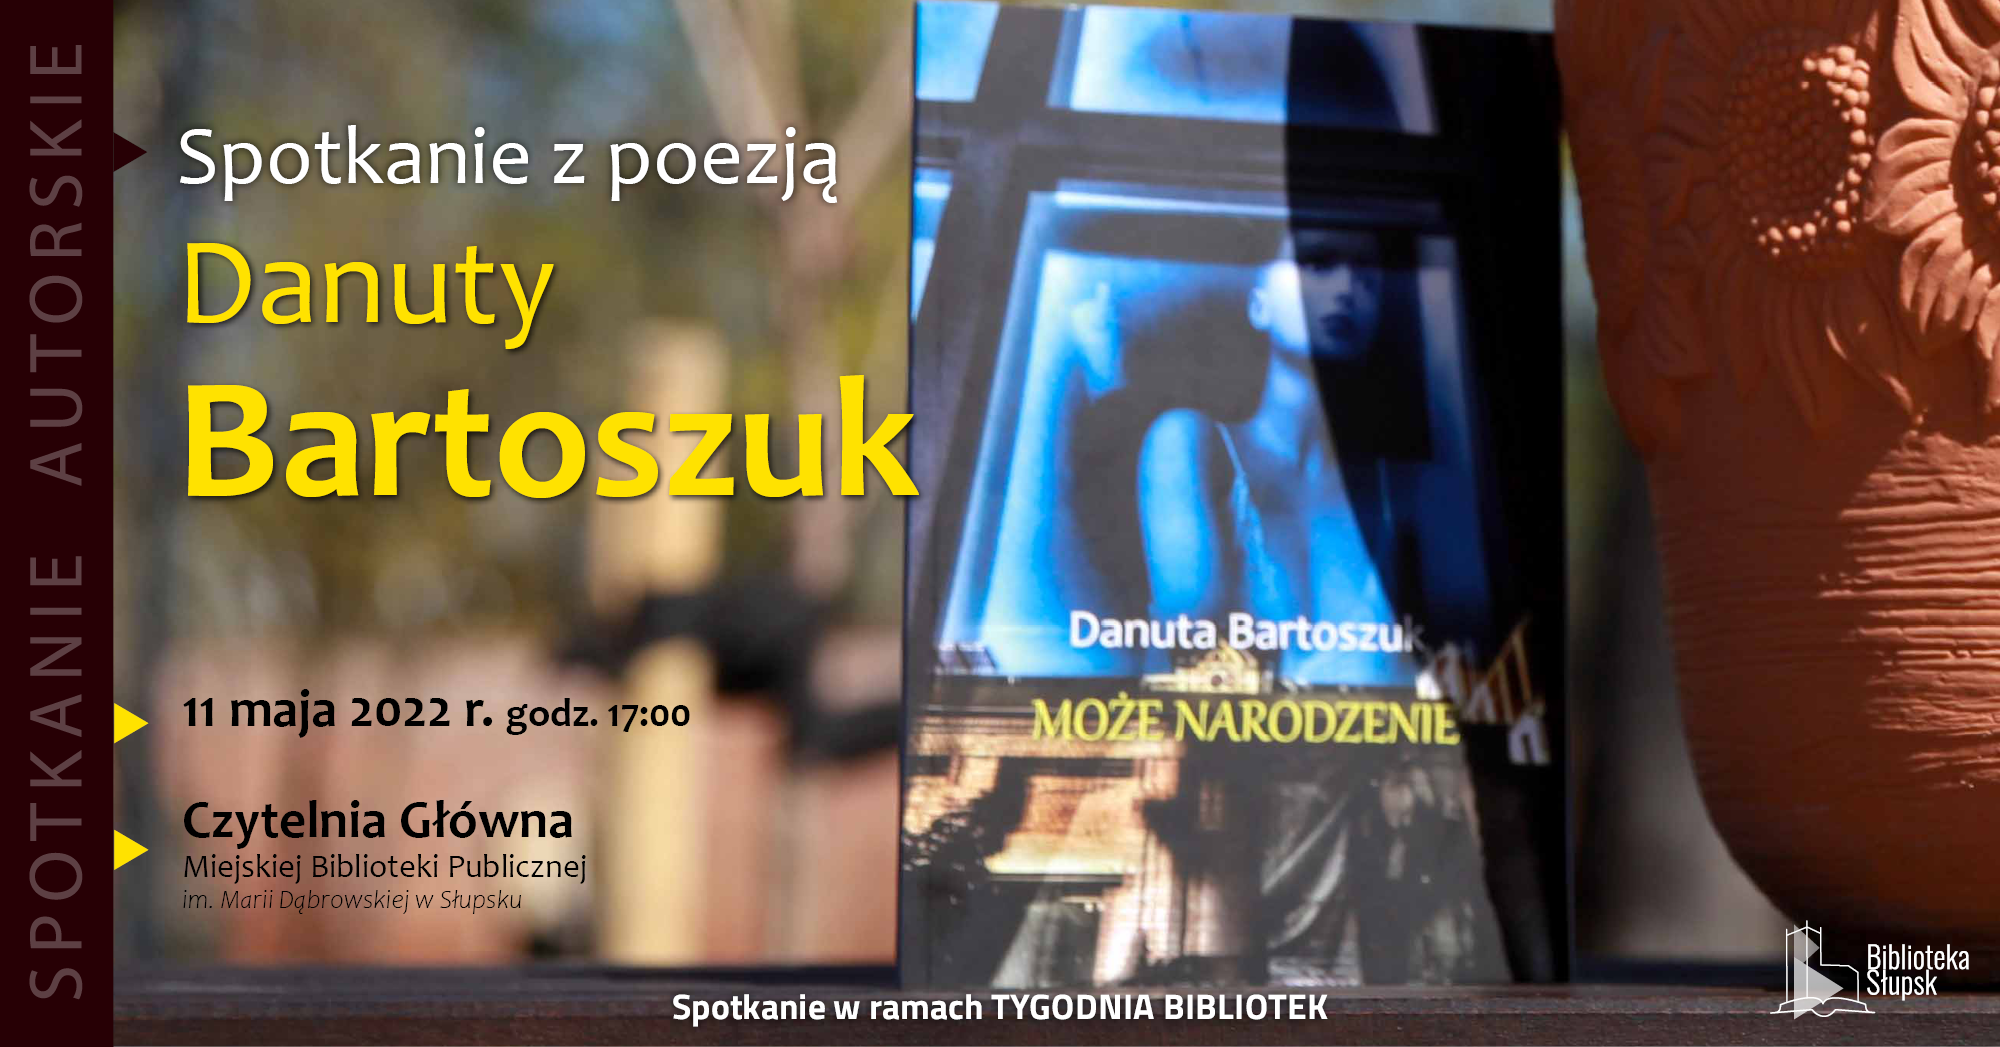 Danuta Bartoszuk fb wydarzenie